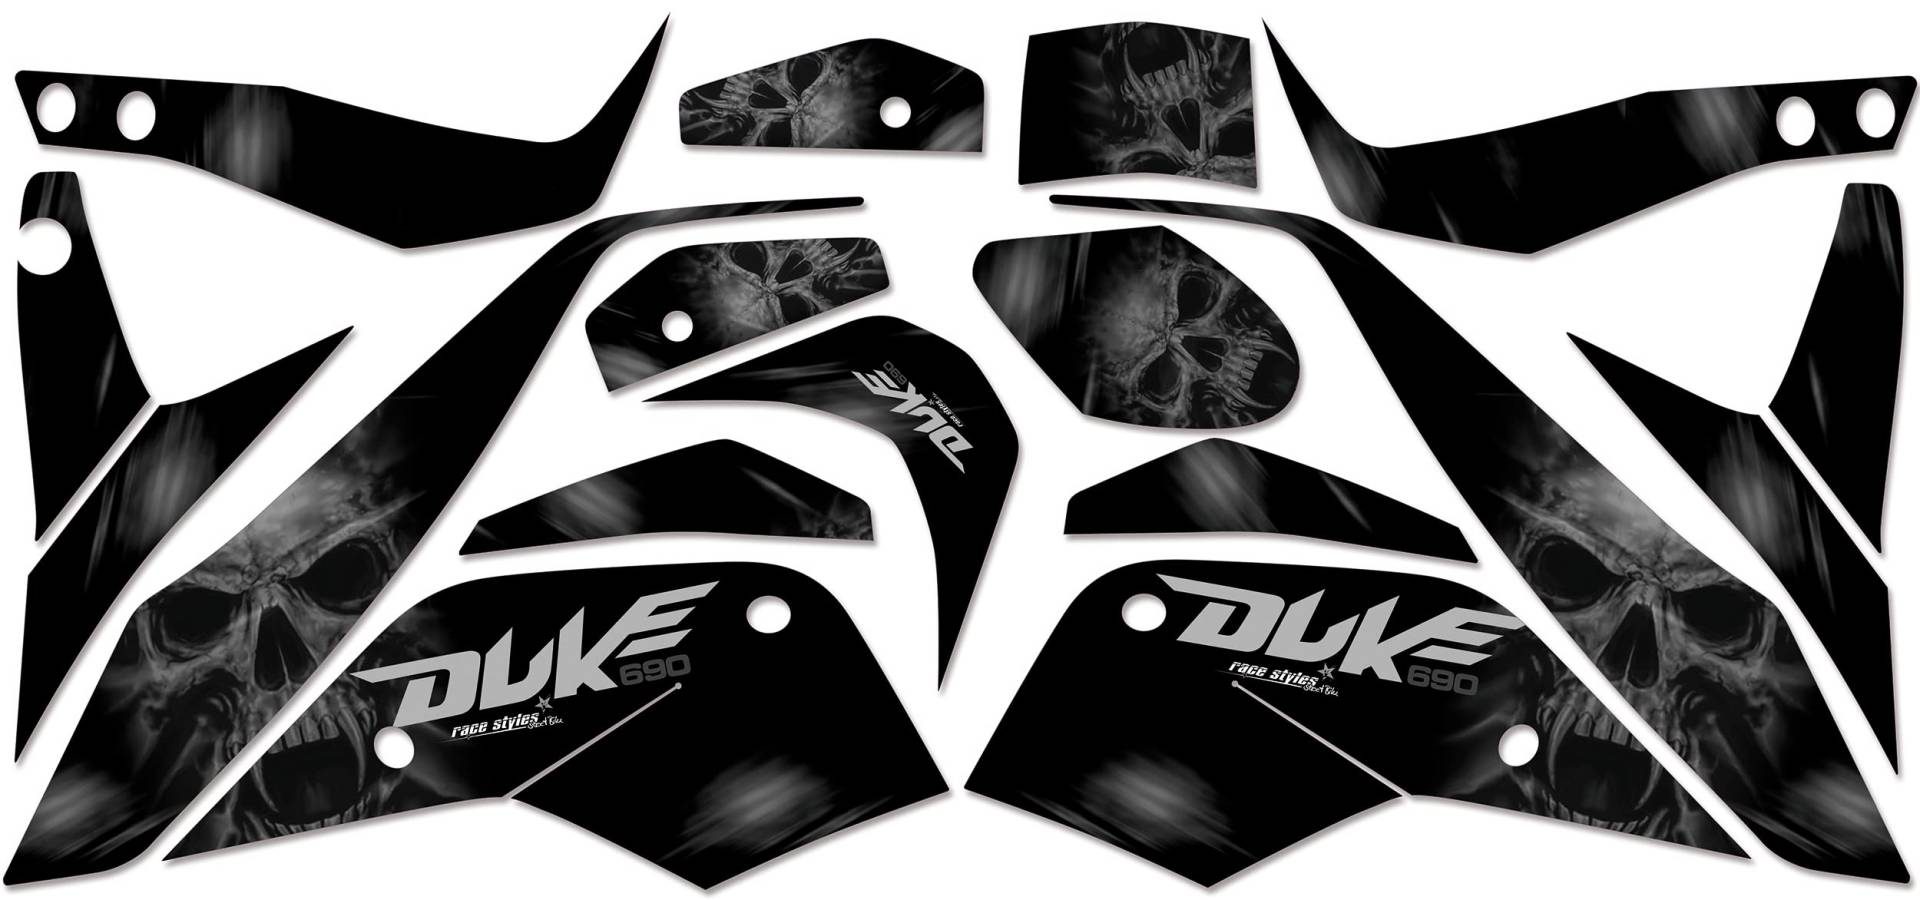 690 Duke 2008-2018 | Factory DEKOR Decals KIT Aufkleber Graphics von race-styles